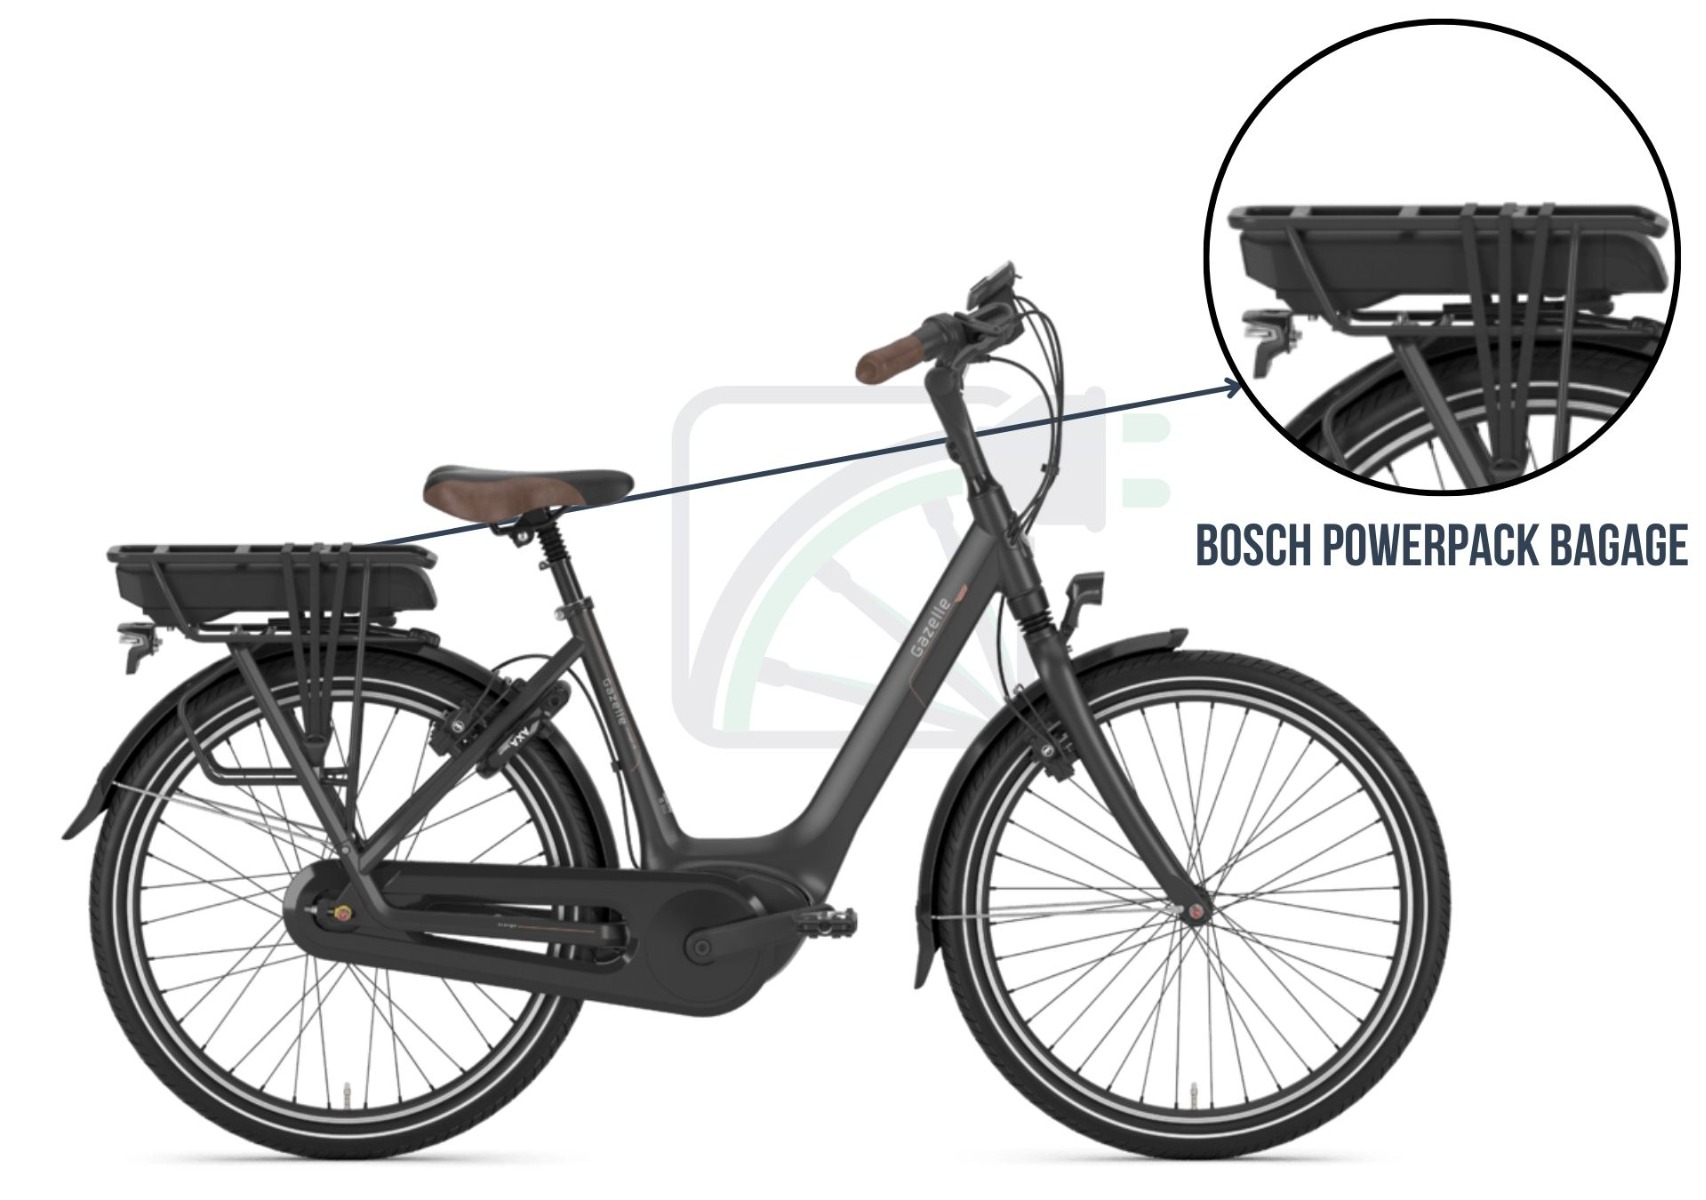 Sur cette image, vous voyez un vélo électrique. L'image met en évidence la batterie et décrit quelles batteries conviennent à ce type de vélo. Dans ce cas, il s'agit du Bosch PowerPack porte-bagages.